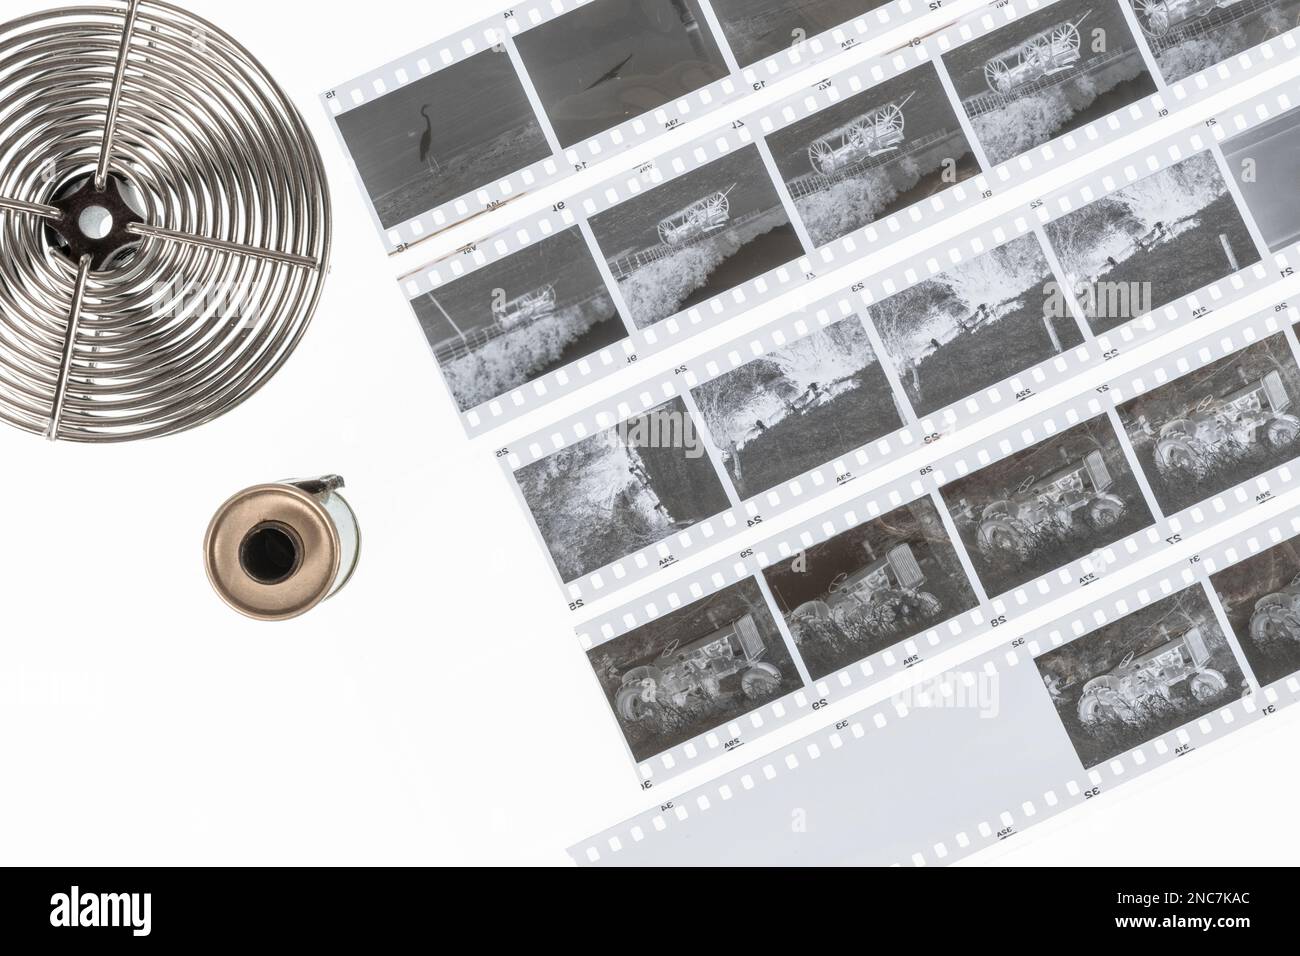 Una grande ripresa nella fotografia cinematografica sta continuando, e questa immagine mostra 35mm negativi in bianco e nero, una bobina di sviluppo, e un rotolo di film al Foto Stock